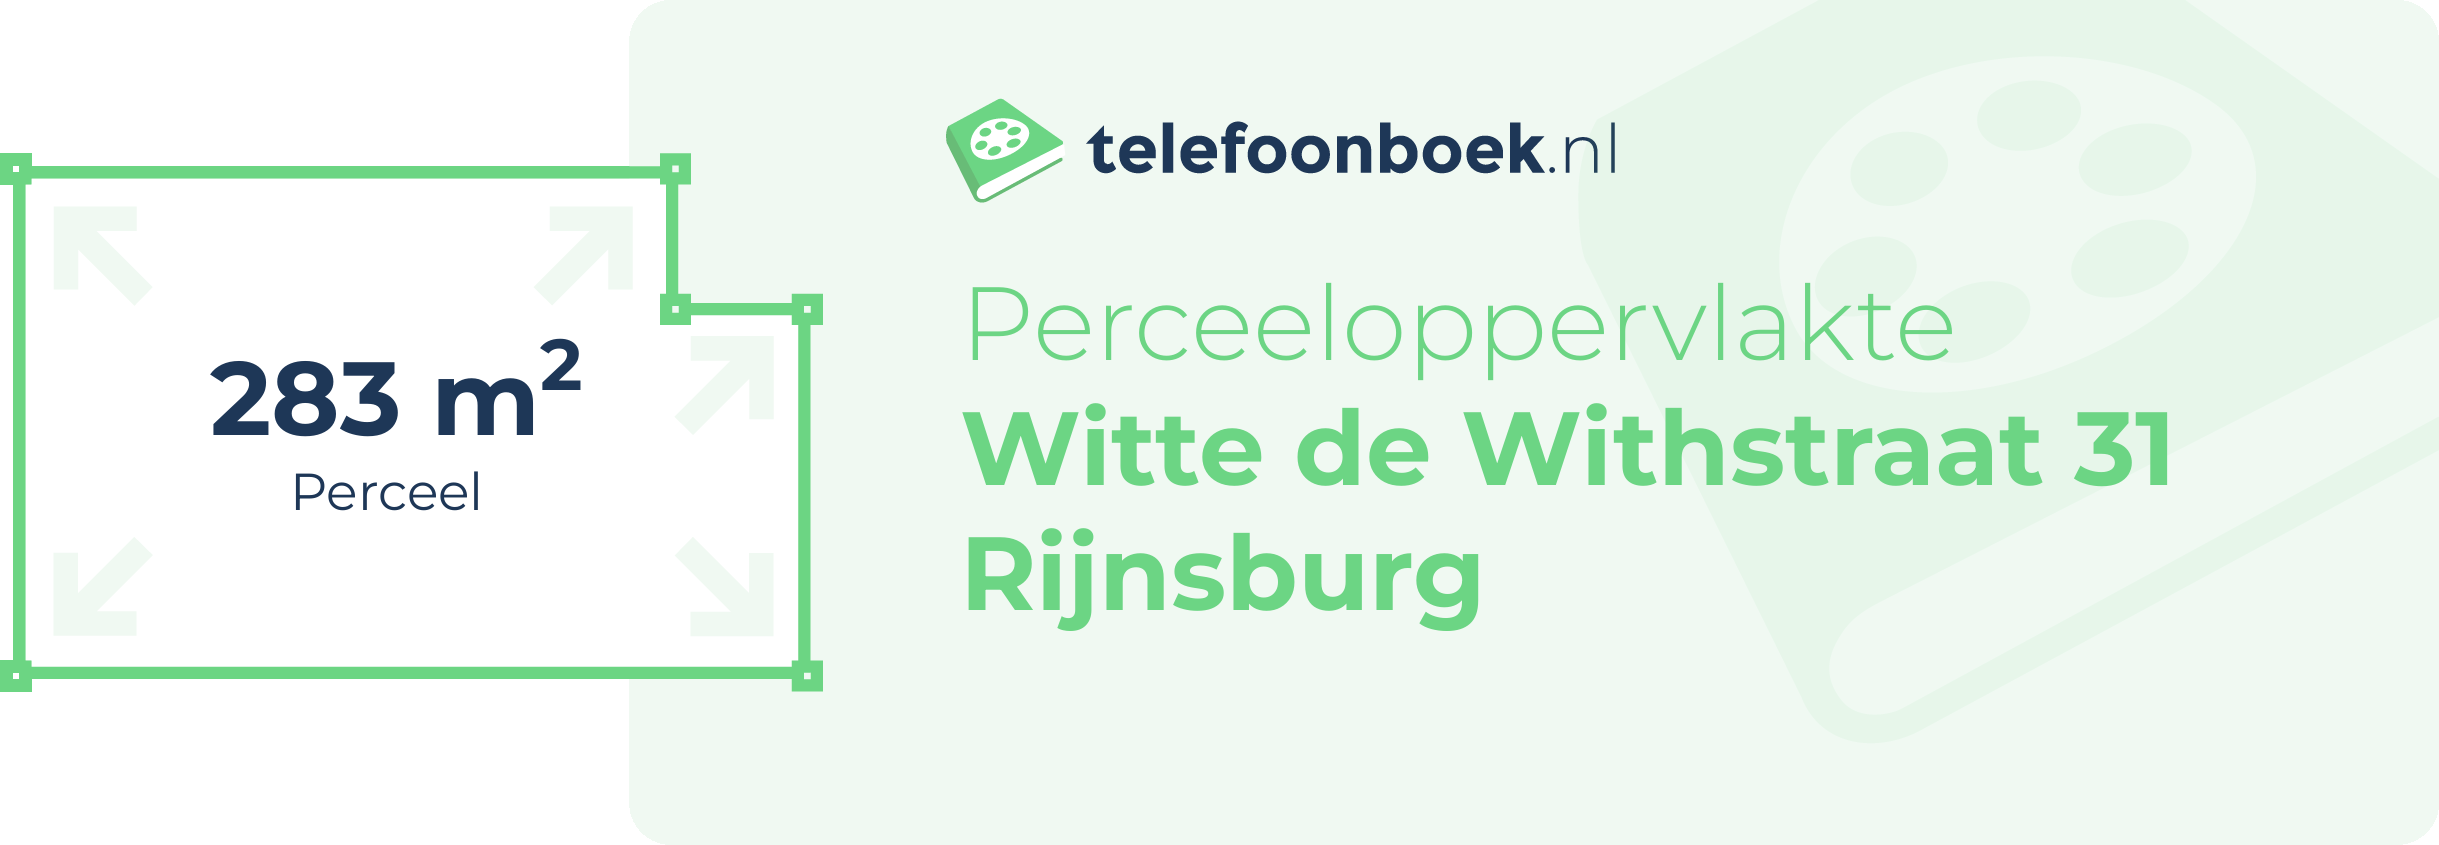 Perceeloppervlakte Witte De Withstraat 31 Rijnsburg